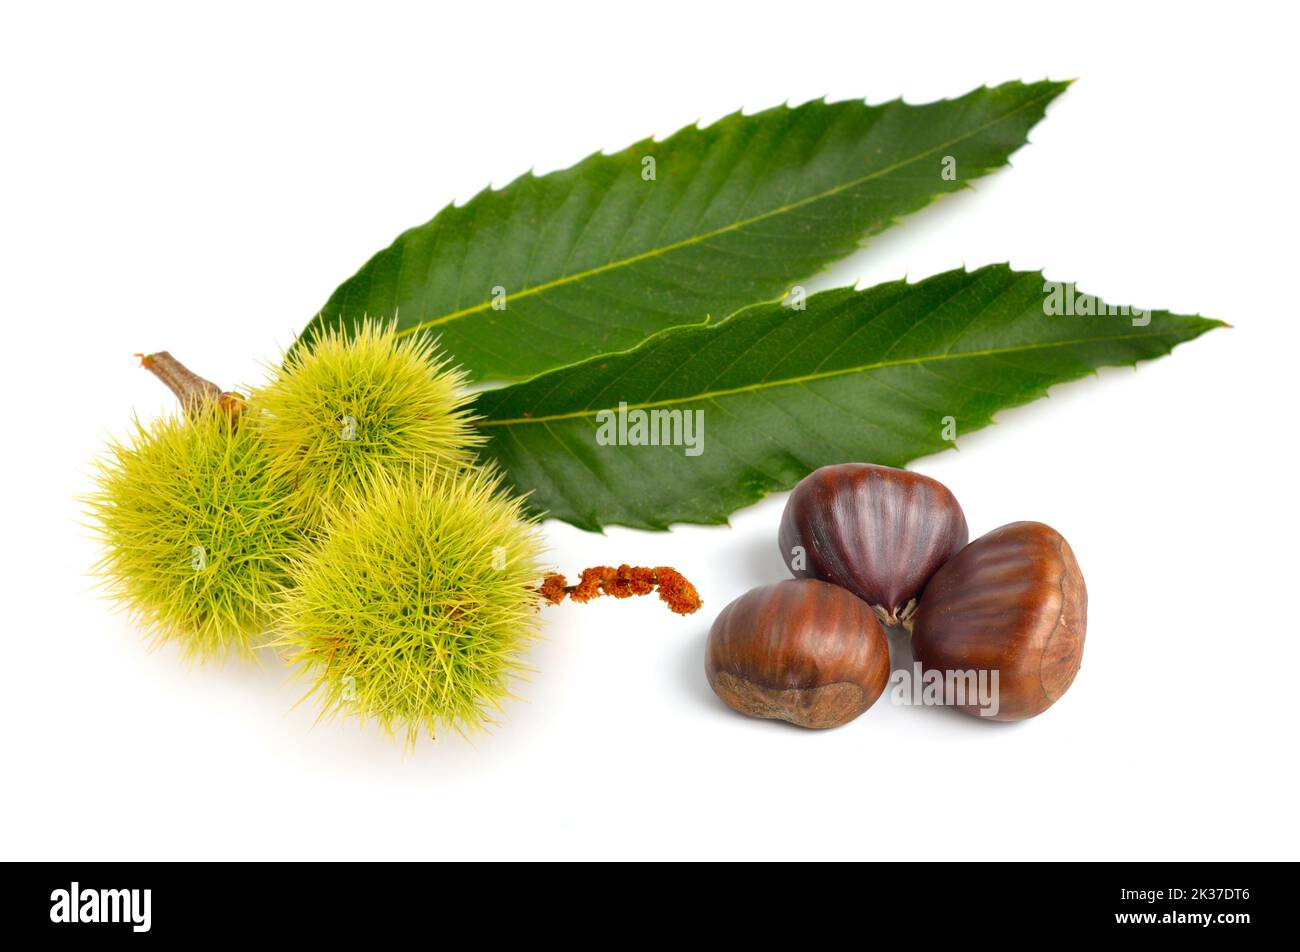 Castanea sativa, or sweet chestnut fruit. Isolated on white background. Stock Photo